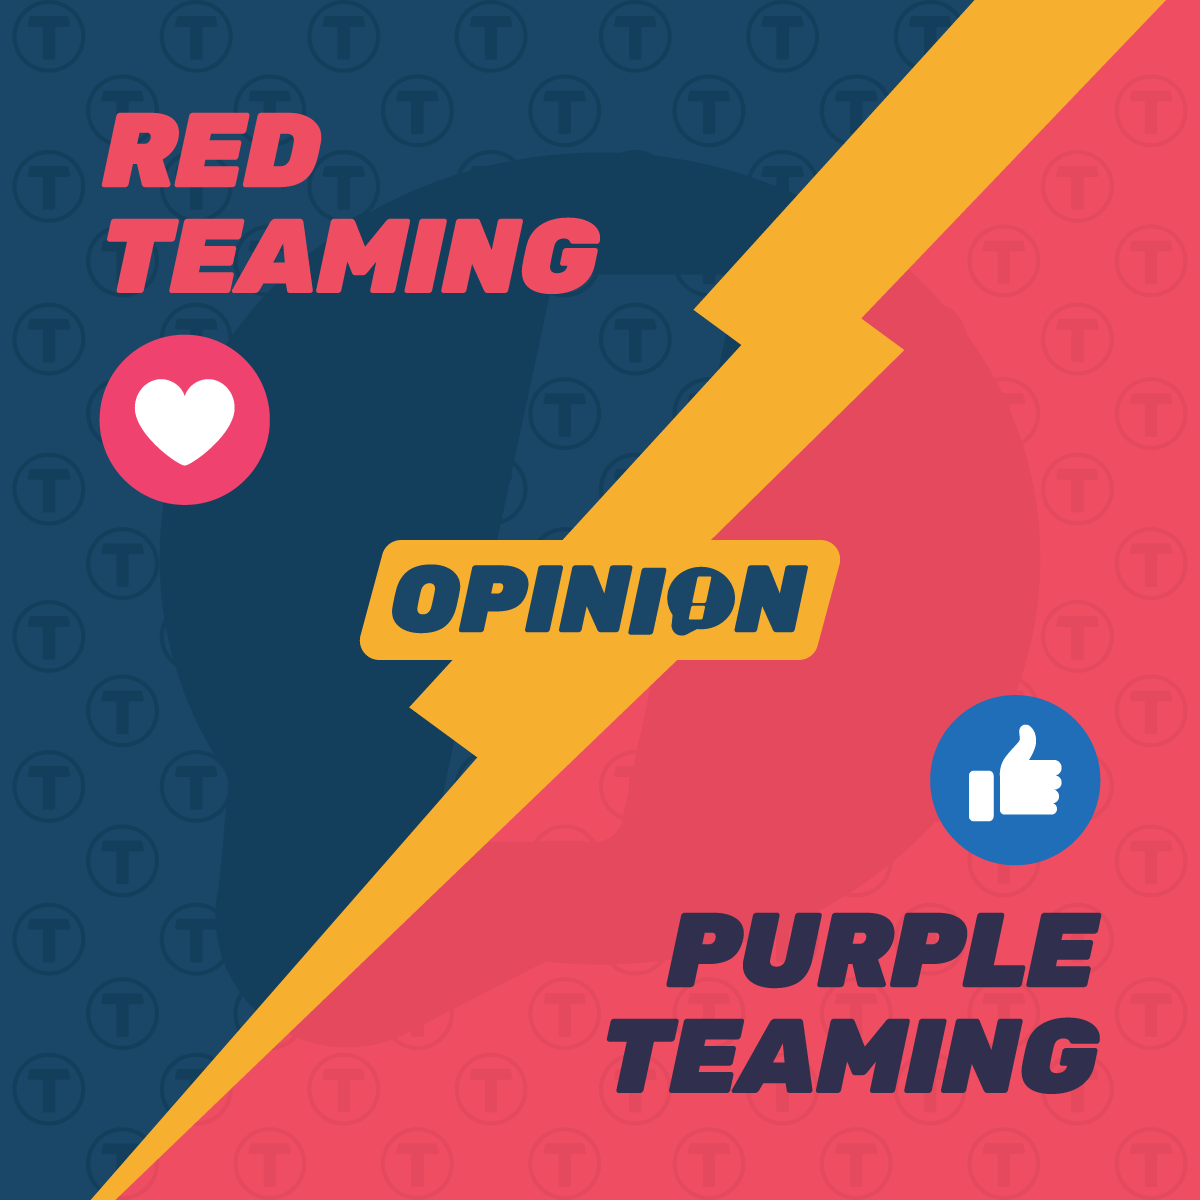 Red Teaming Vs Purple Teaming